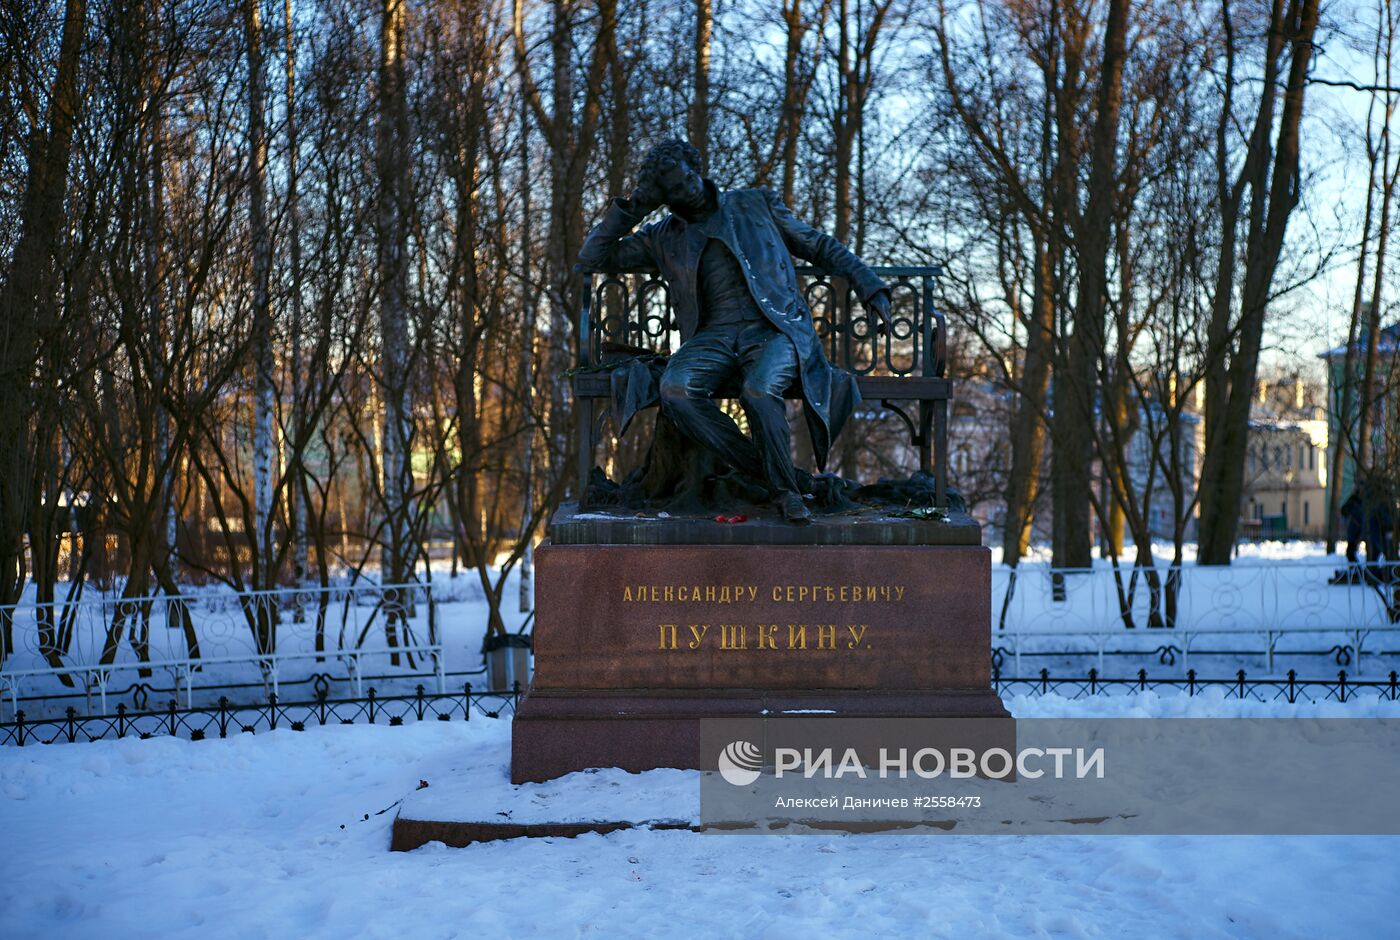 Царскосельский парк в Санкт-Петербурге